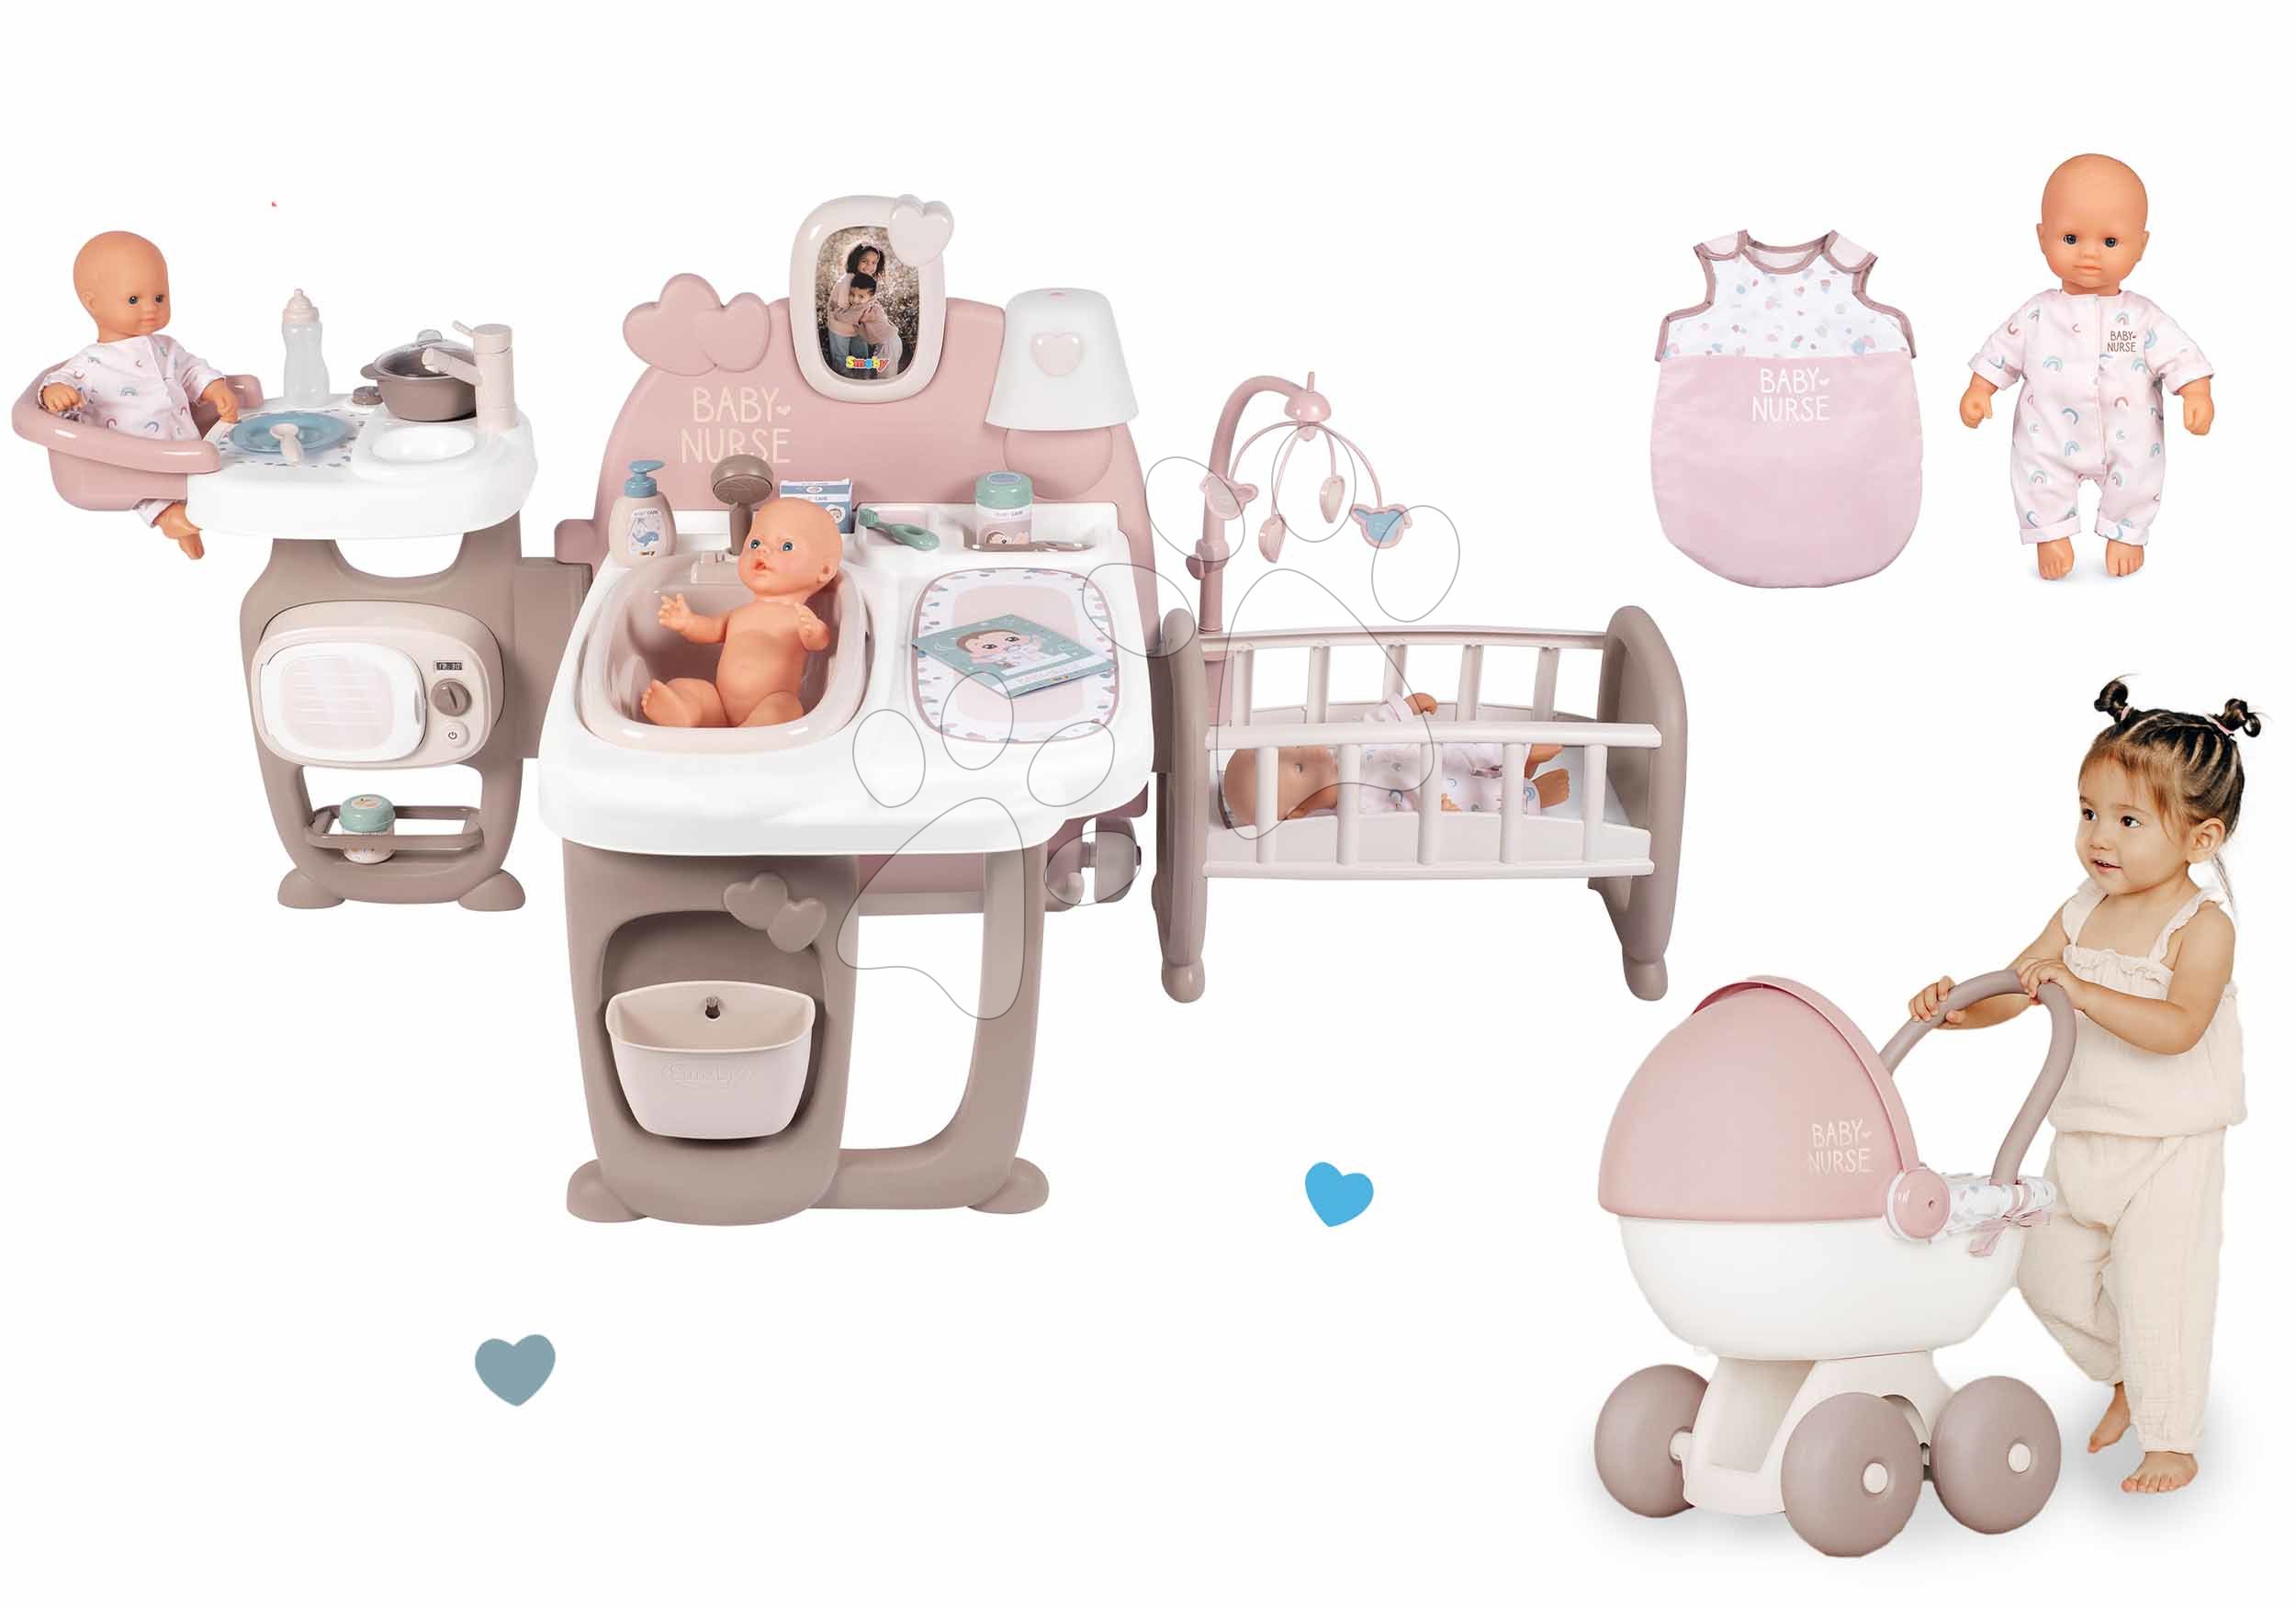 Kućice za lutke setovi - Set kućica za lutku Large Doll's Play Center Natur D'Amour Baby Nurse Smoby i duboka kolica s vrećom za spavanje i lutkom veličine 32 cm